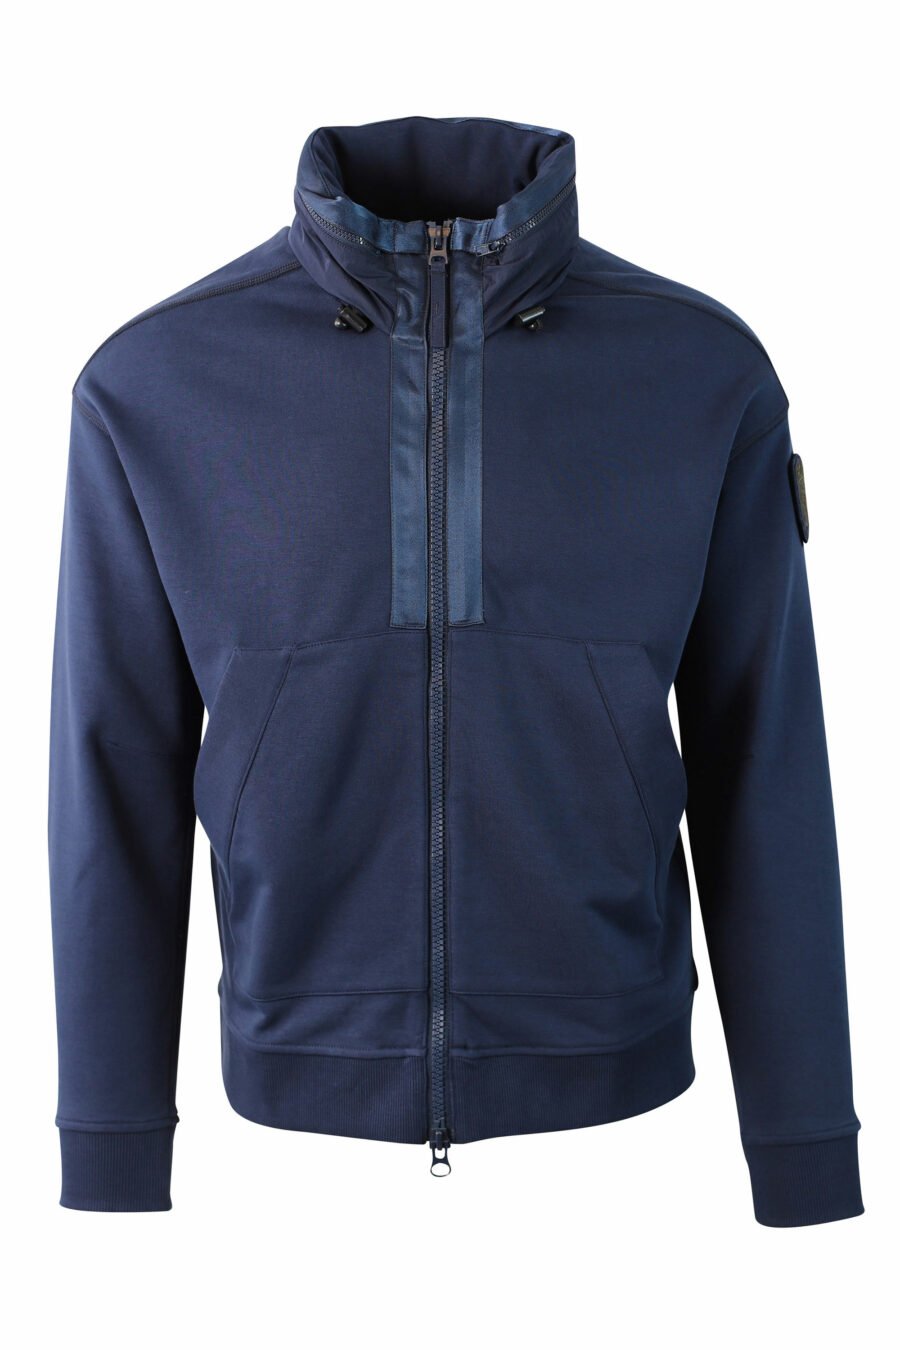 Blue fleece sweatshirt with zip and patch - IMG 0028 1